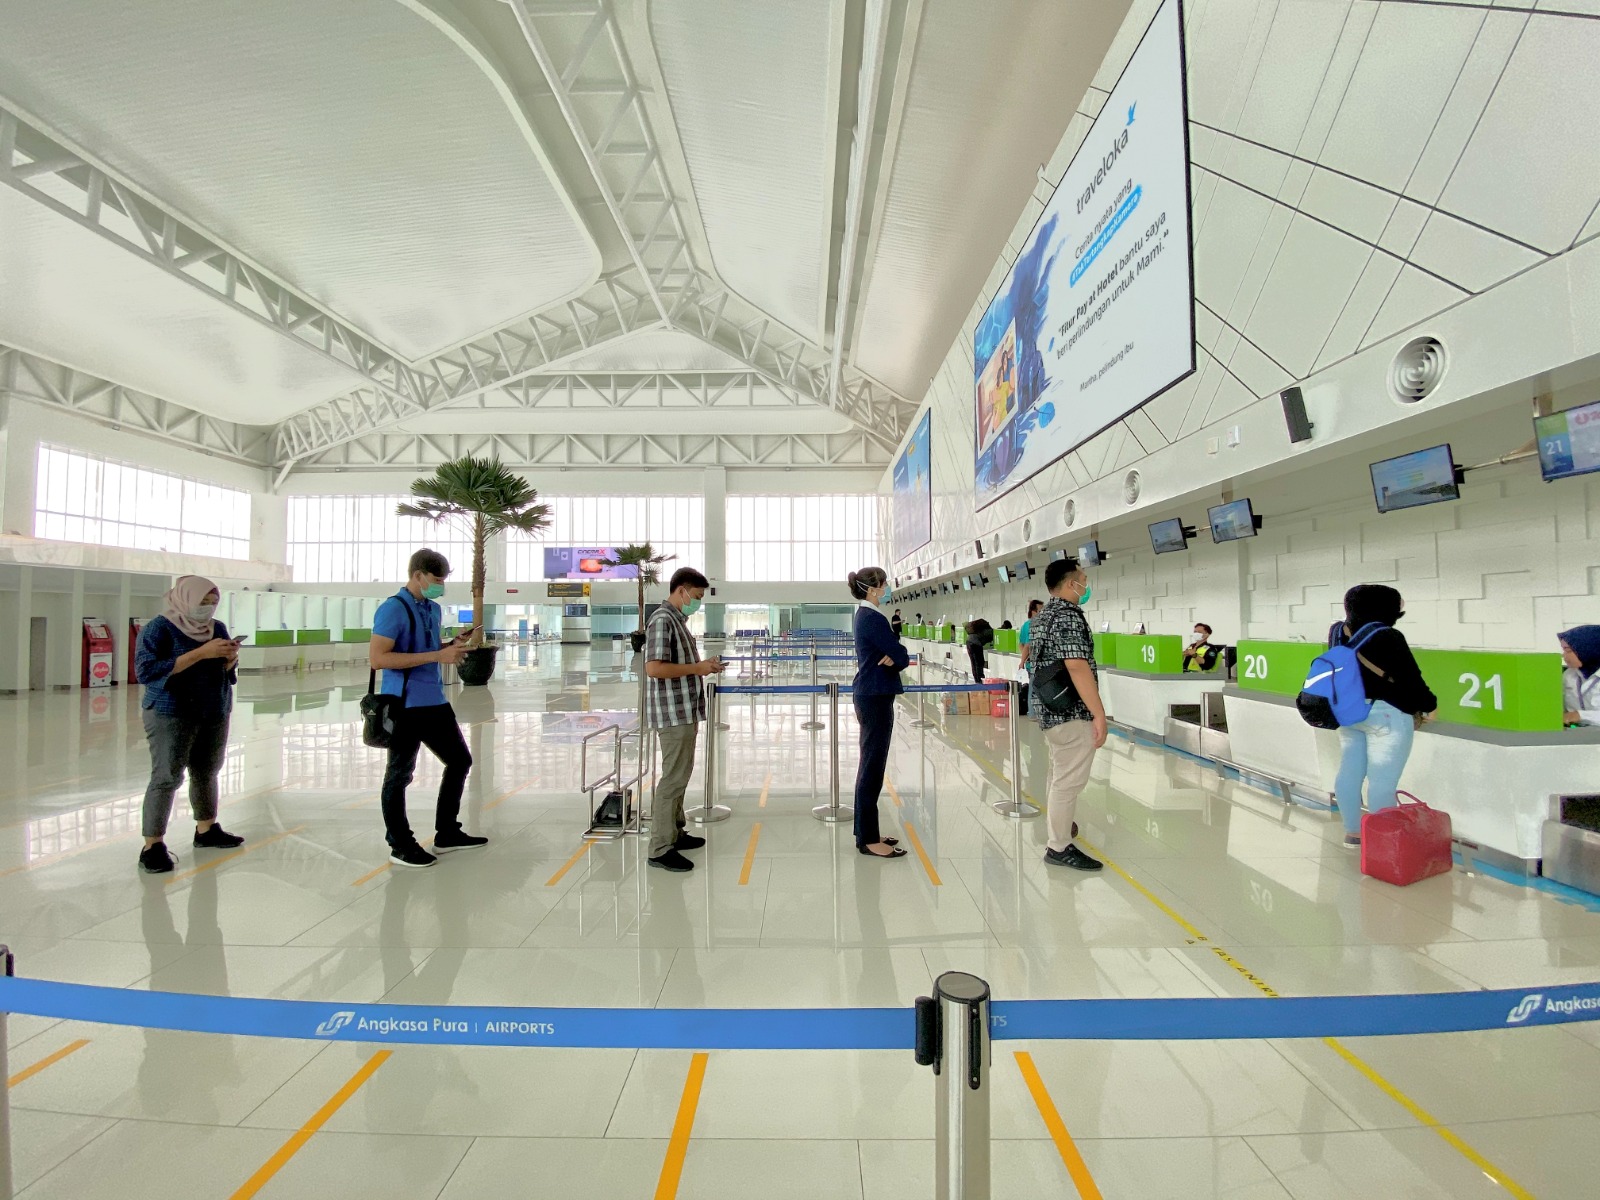 fasilitas disediakan untuk mempermudah para penumpang untuk menuju gate yang berada di ujung terminal